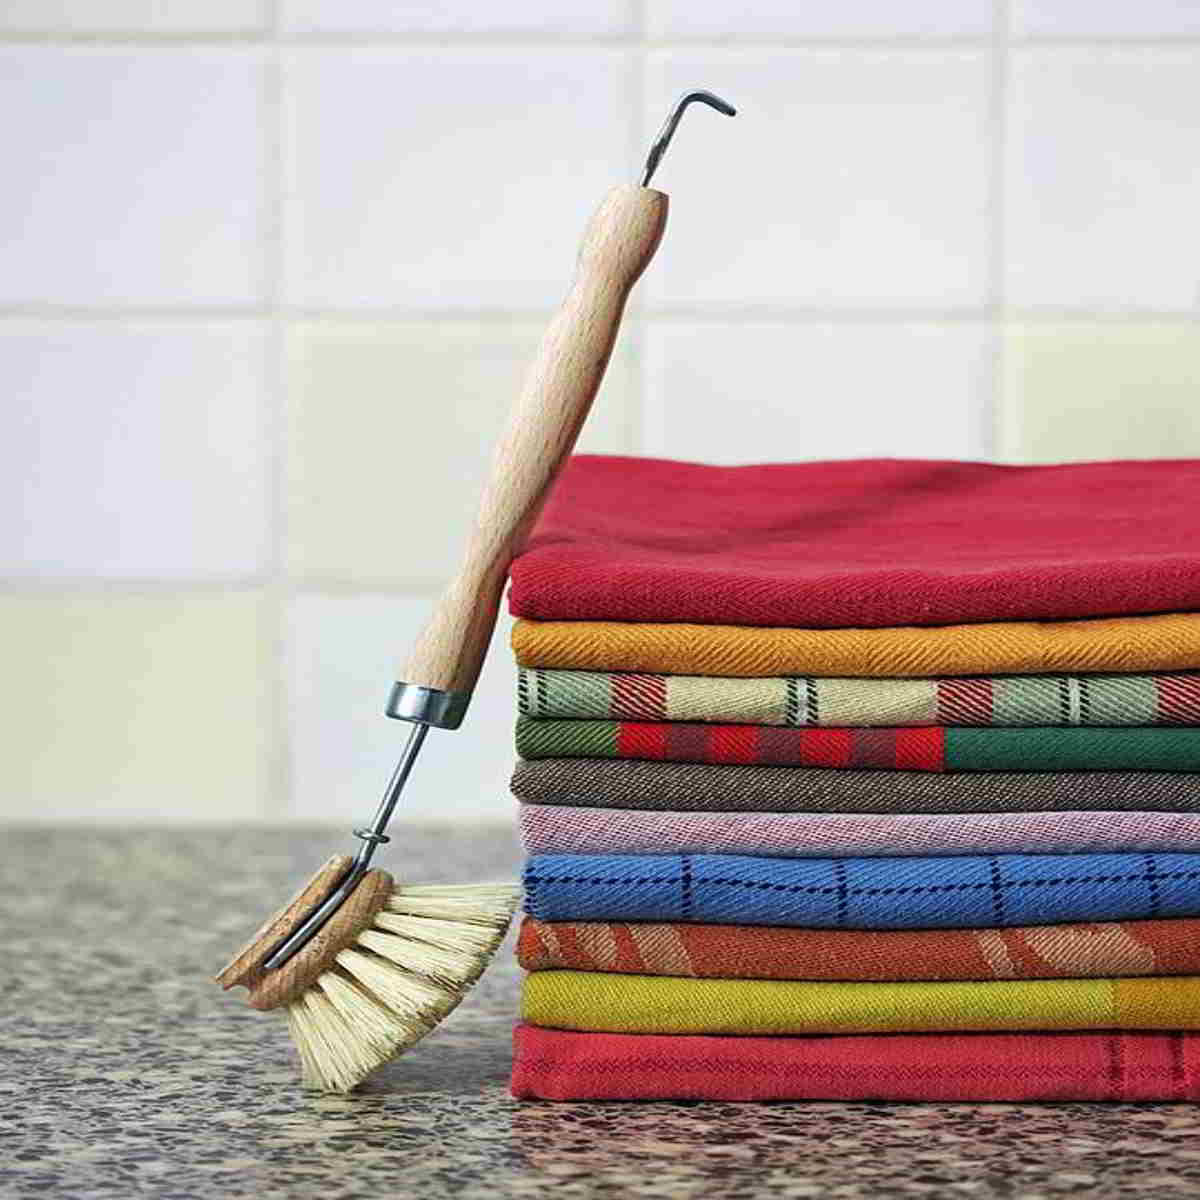 Housekeeping courses in Kenya